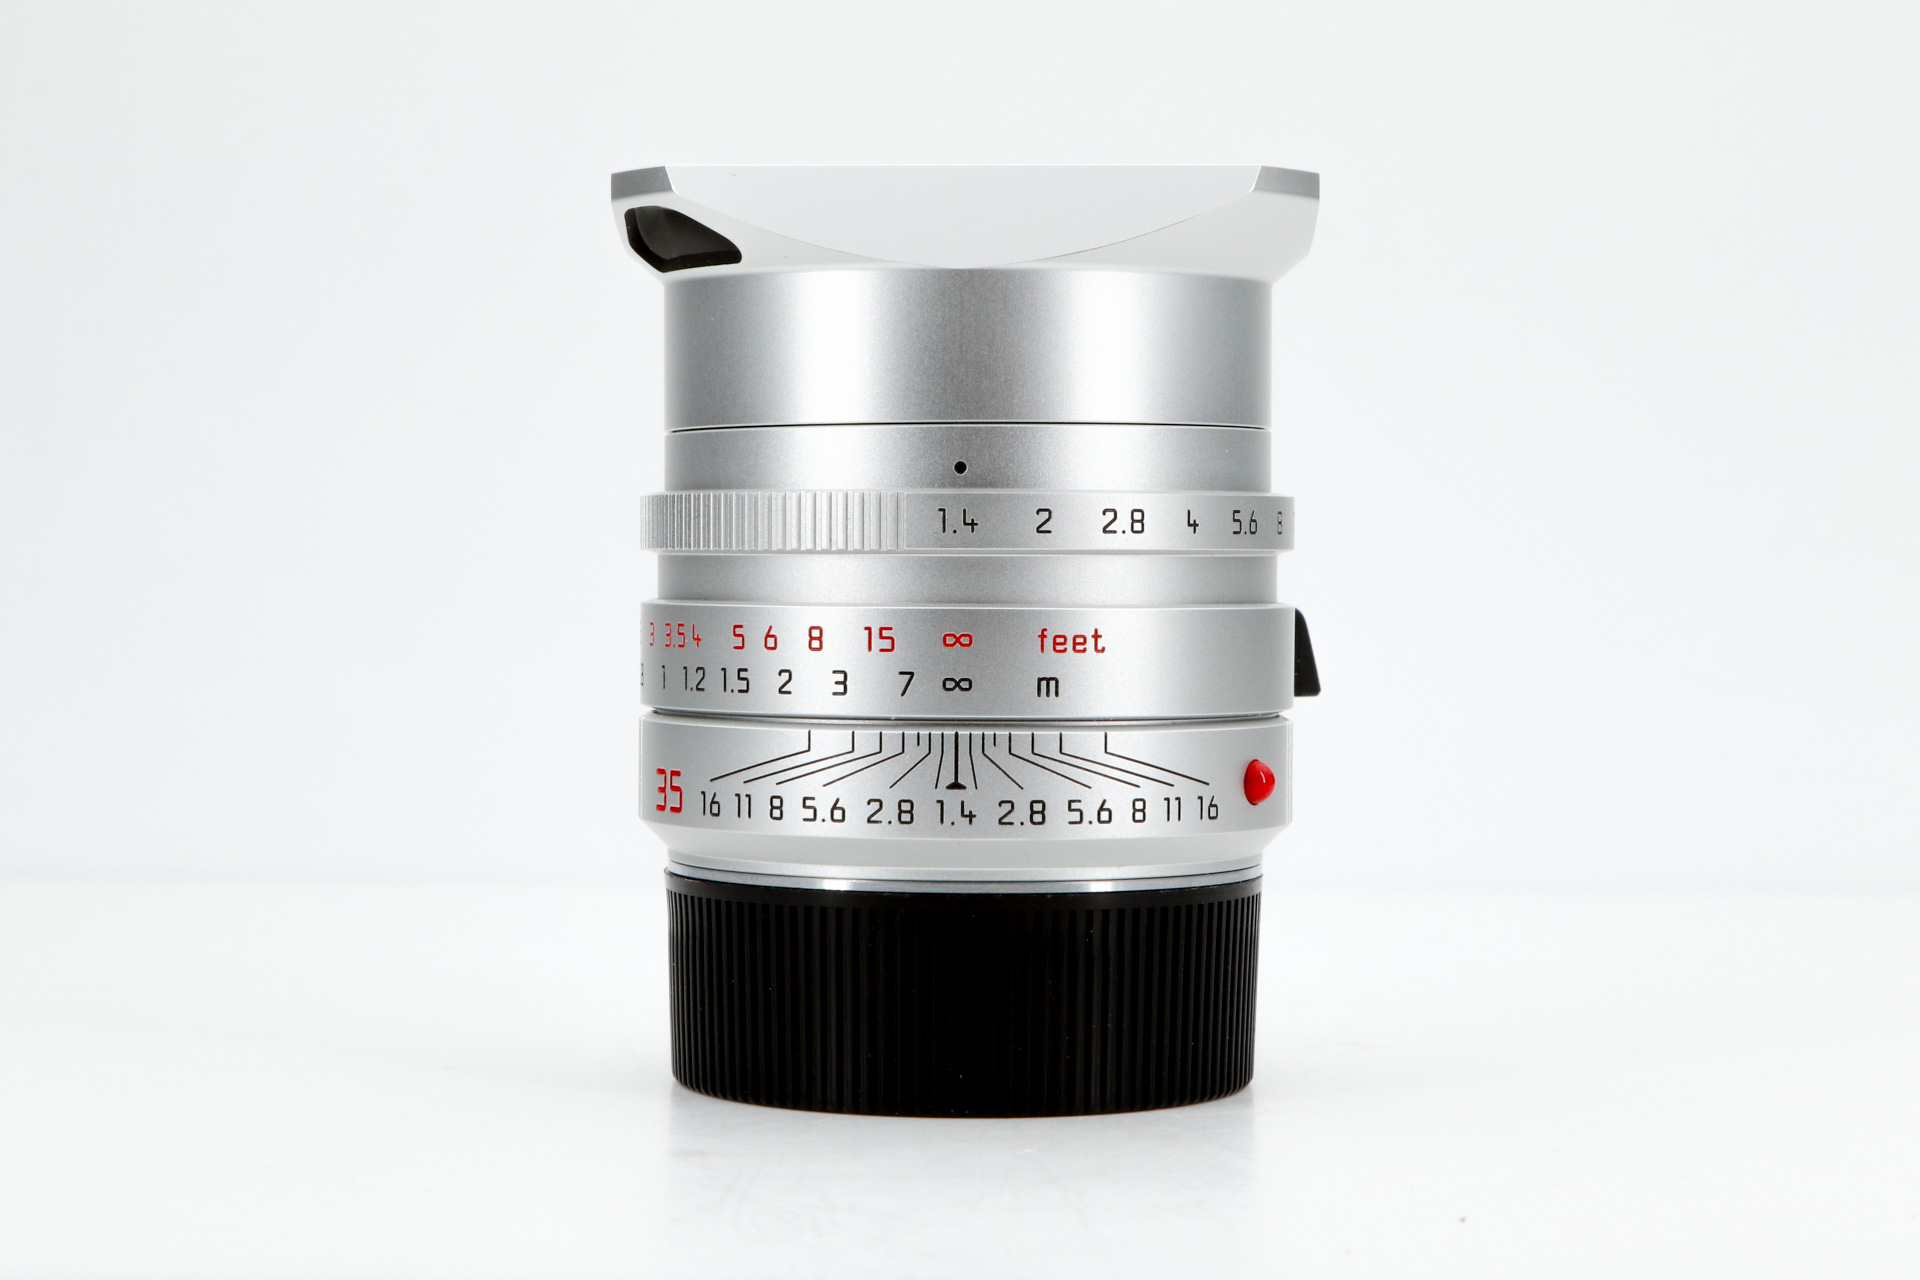 LEICA SUMMILUX-M 1.4/35mm ASPH., silbern, OVP